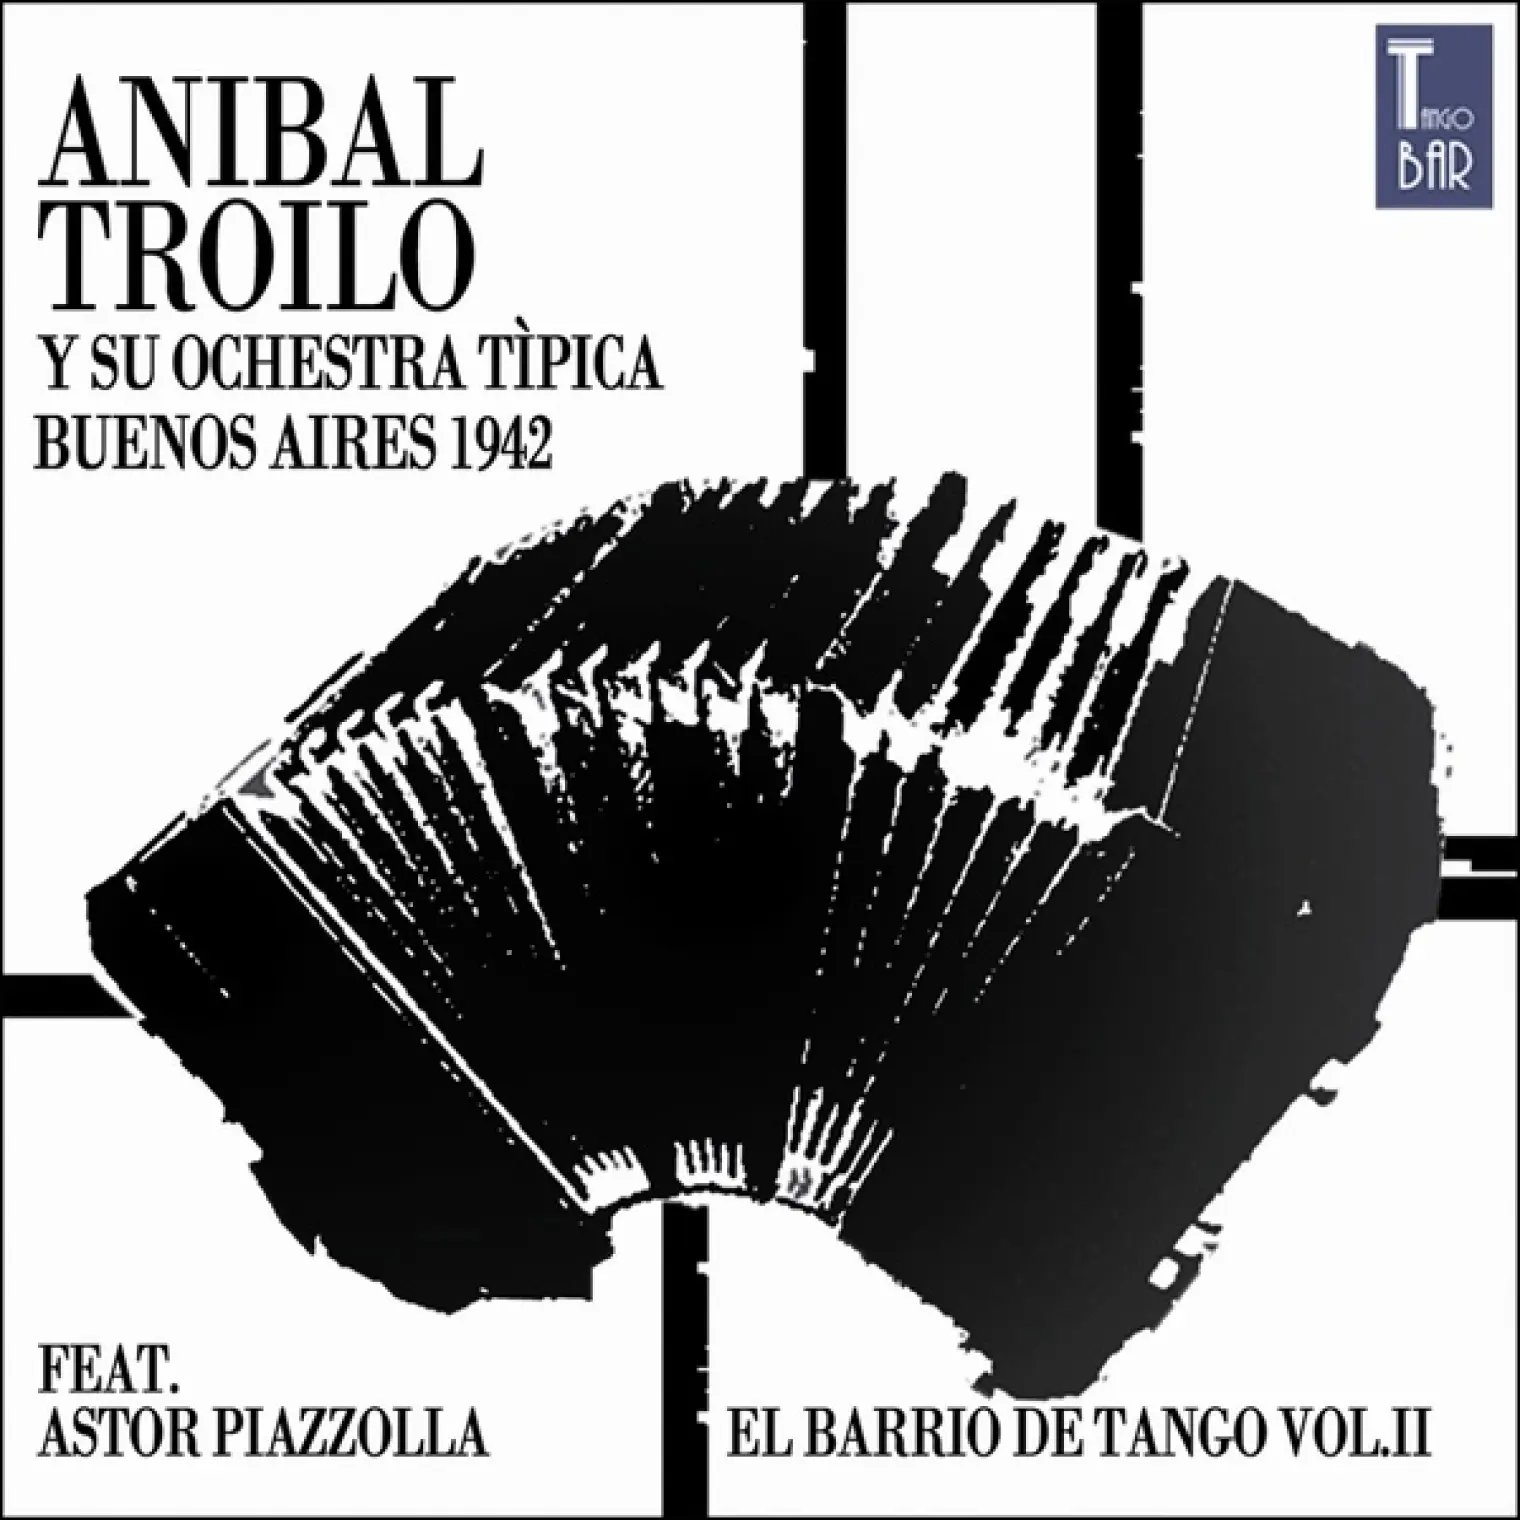 El Barrio de Tango, Vol. 2 (Die Ersten Aufnahmen von Astor Piazzolla) -  Anibal Troilo 